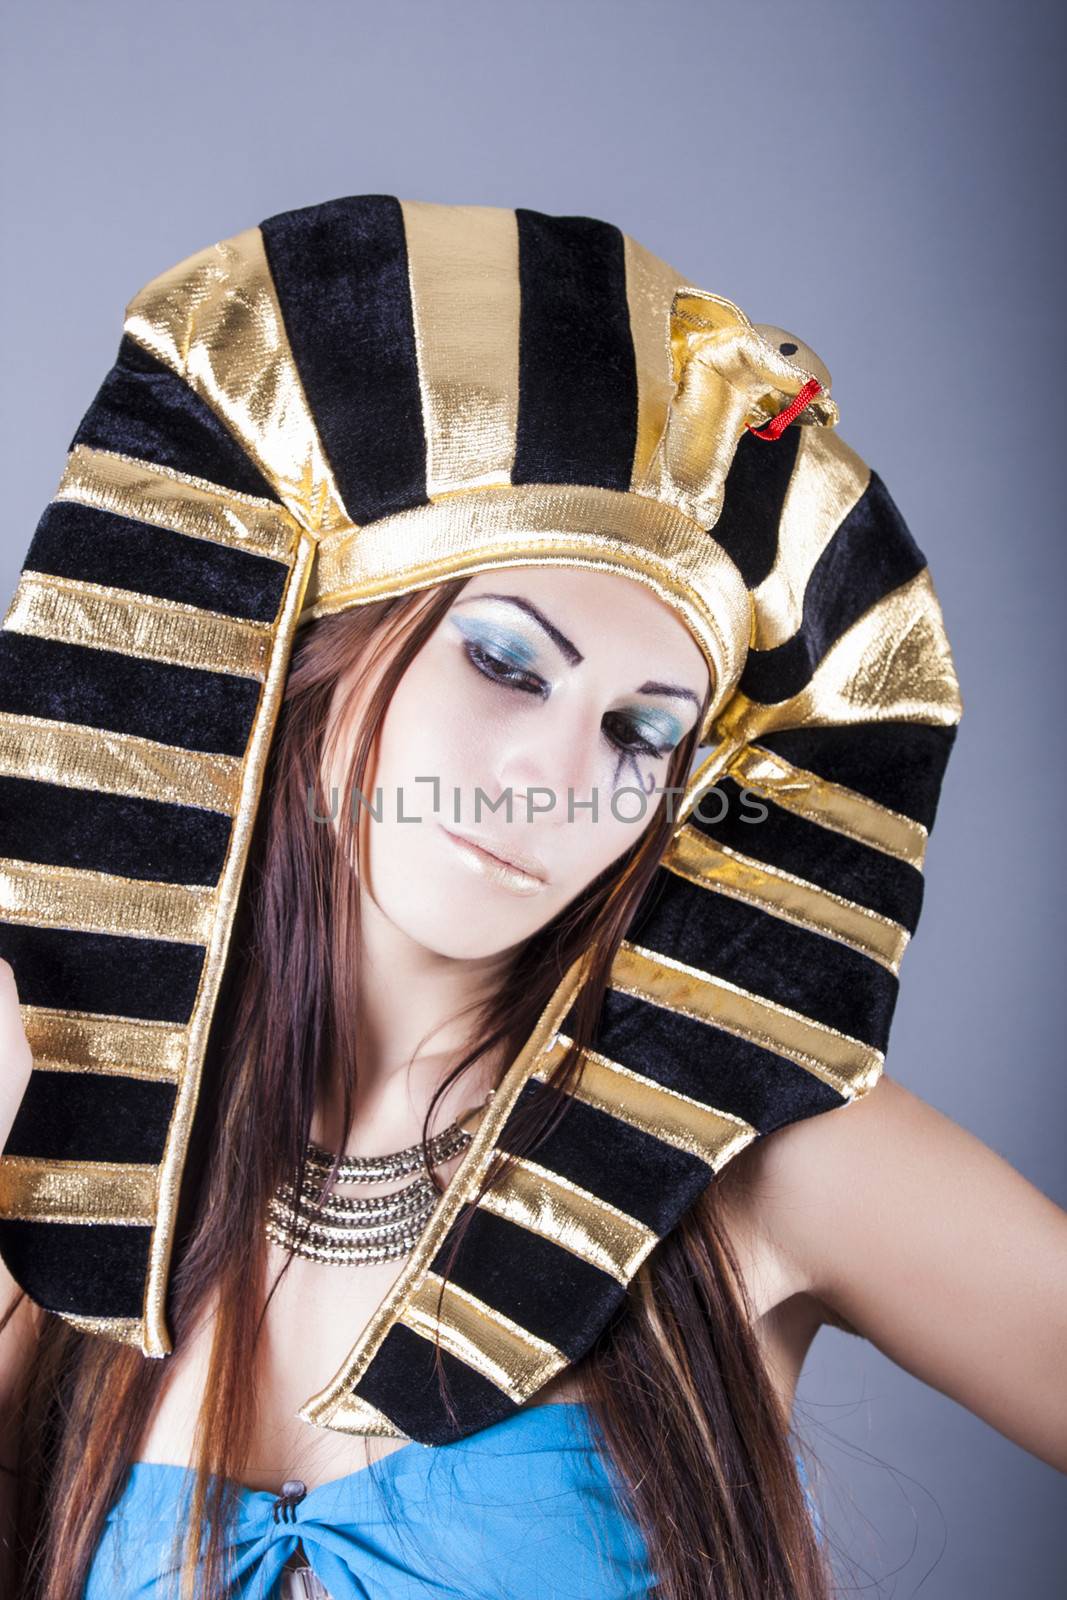 Cleopatra by dukibu